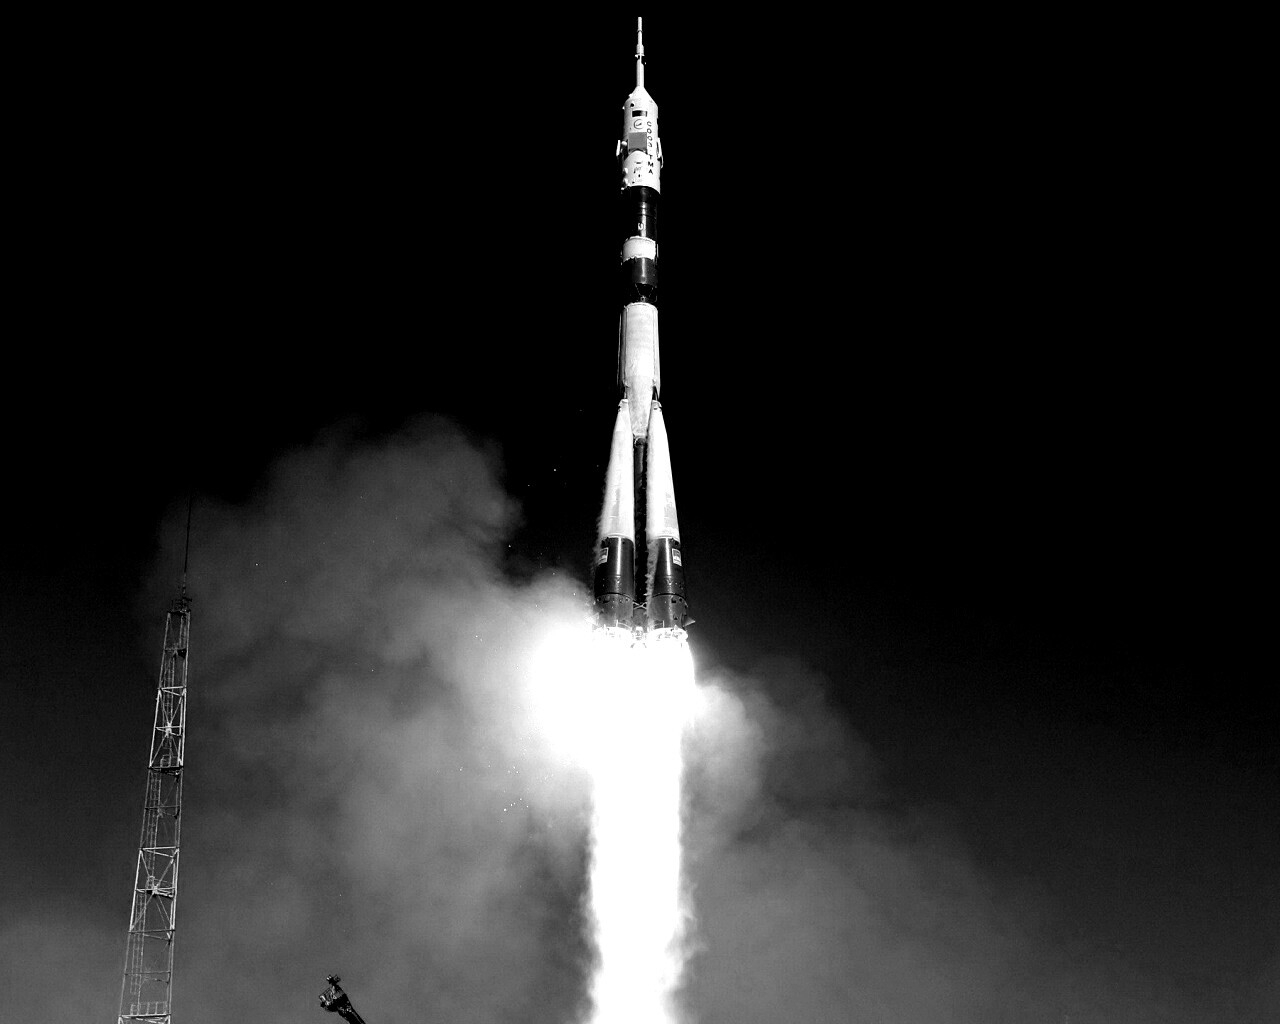 Фото ракеты гагарина. Ракета Юрия Гагарина Восток-1. Ракета взлетает. Ракета старт. Запуск ракеты Гагарина.